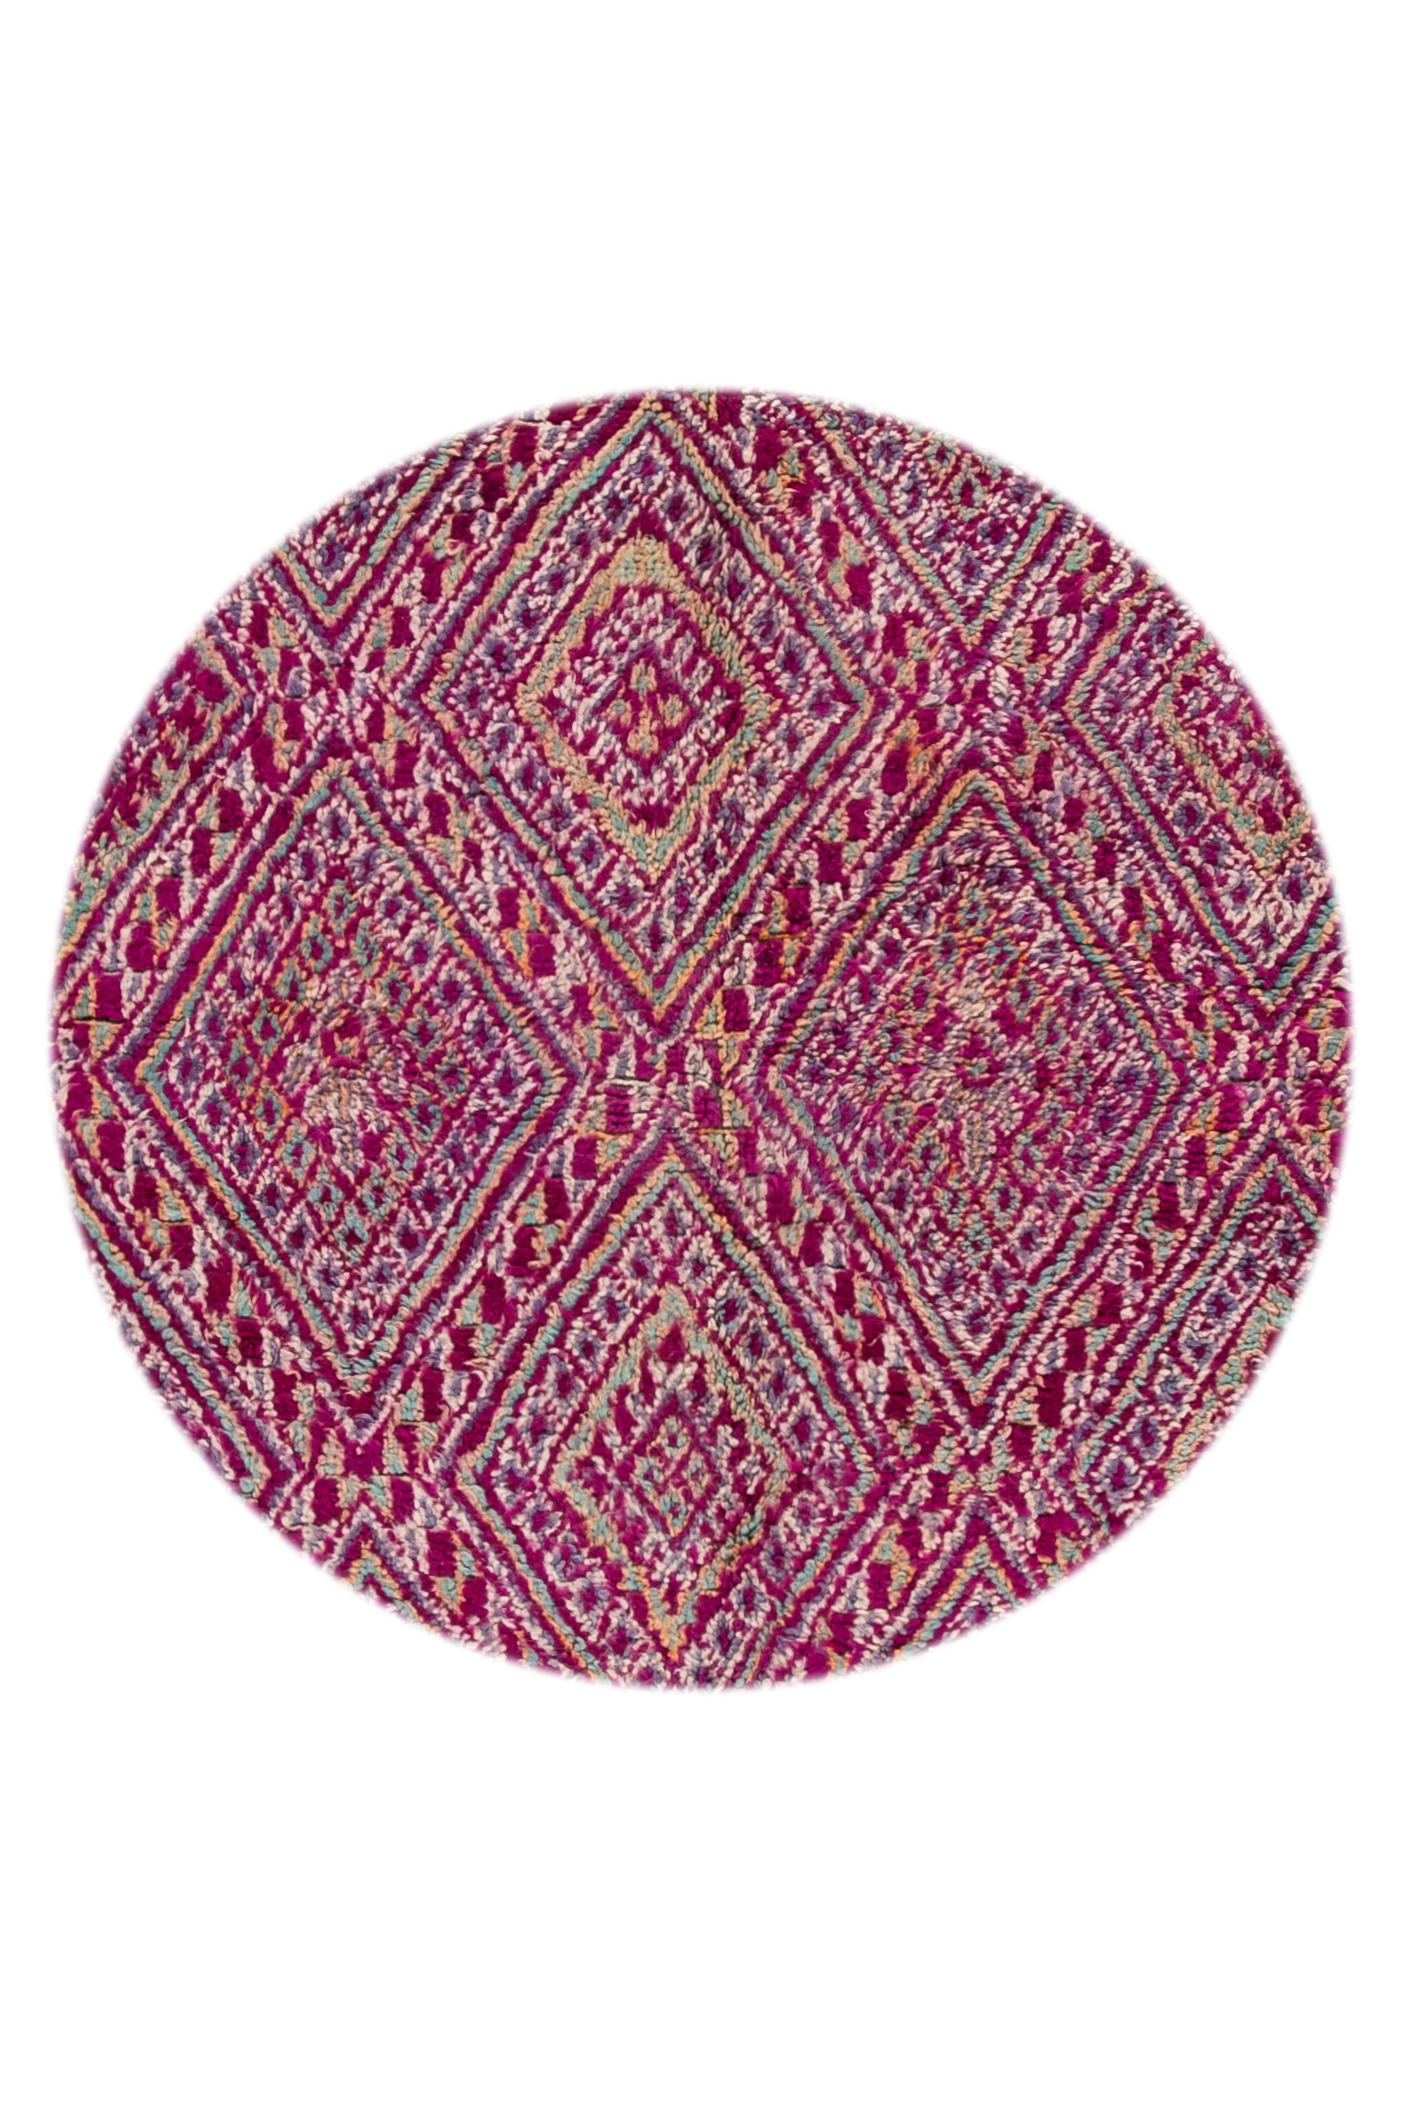 Schöner handgeknüpfter Wollteppich im Vintage-Stil. Dieser Teppich hat ein lilafarbenes Feld mit mehrfarbigen Stammesakzenten. 

Dieser Teppich misst 6'10